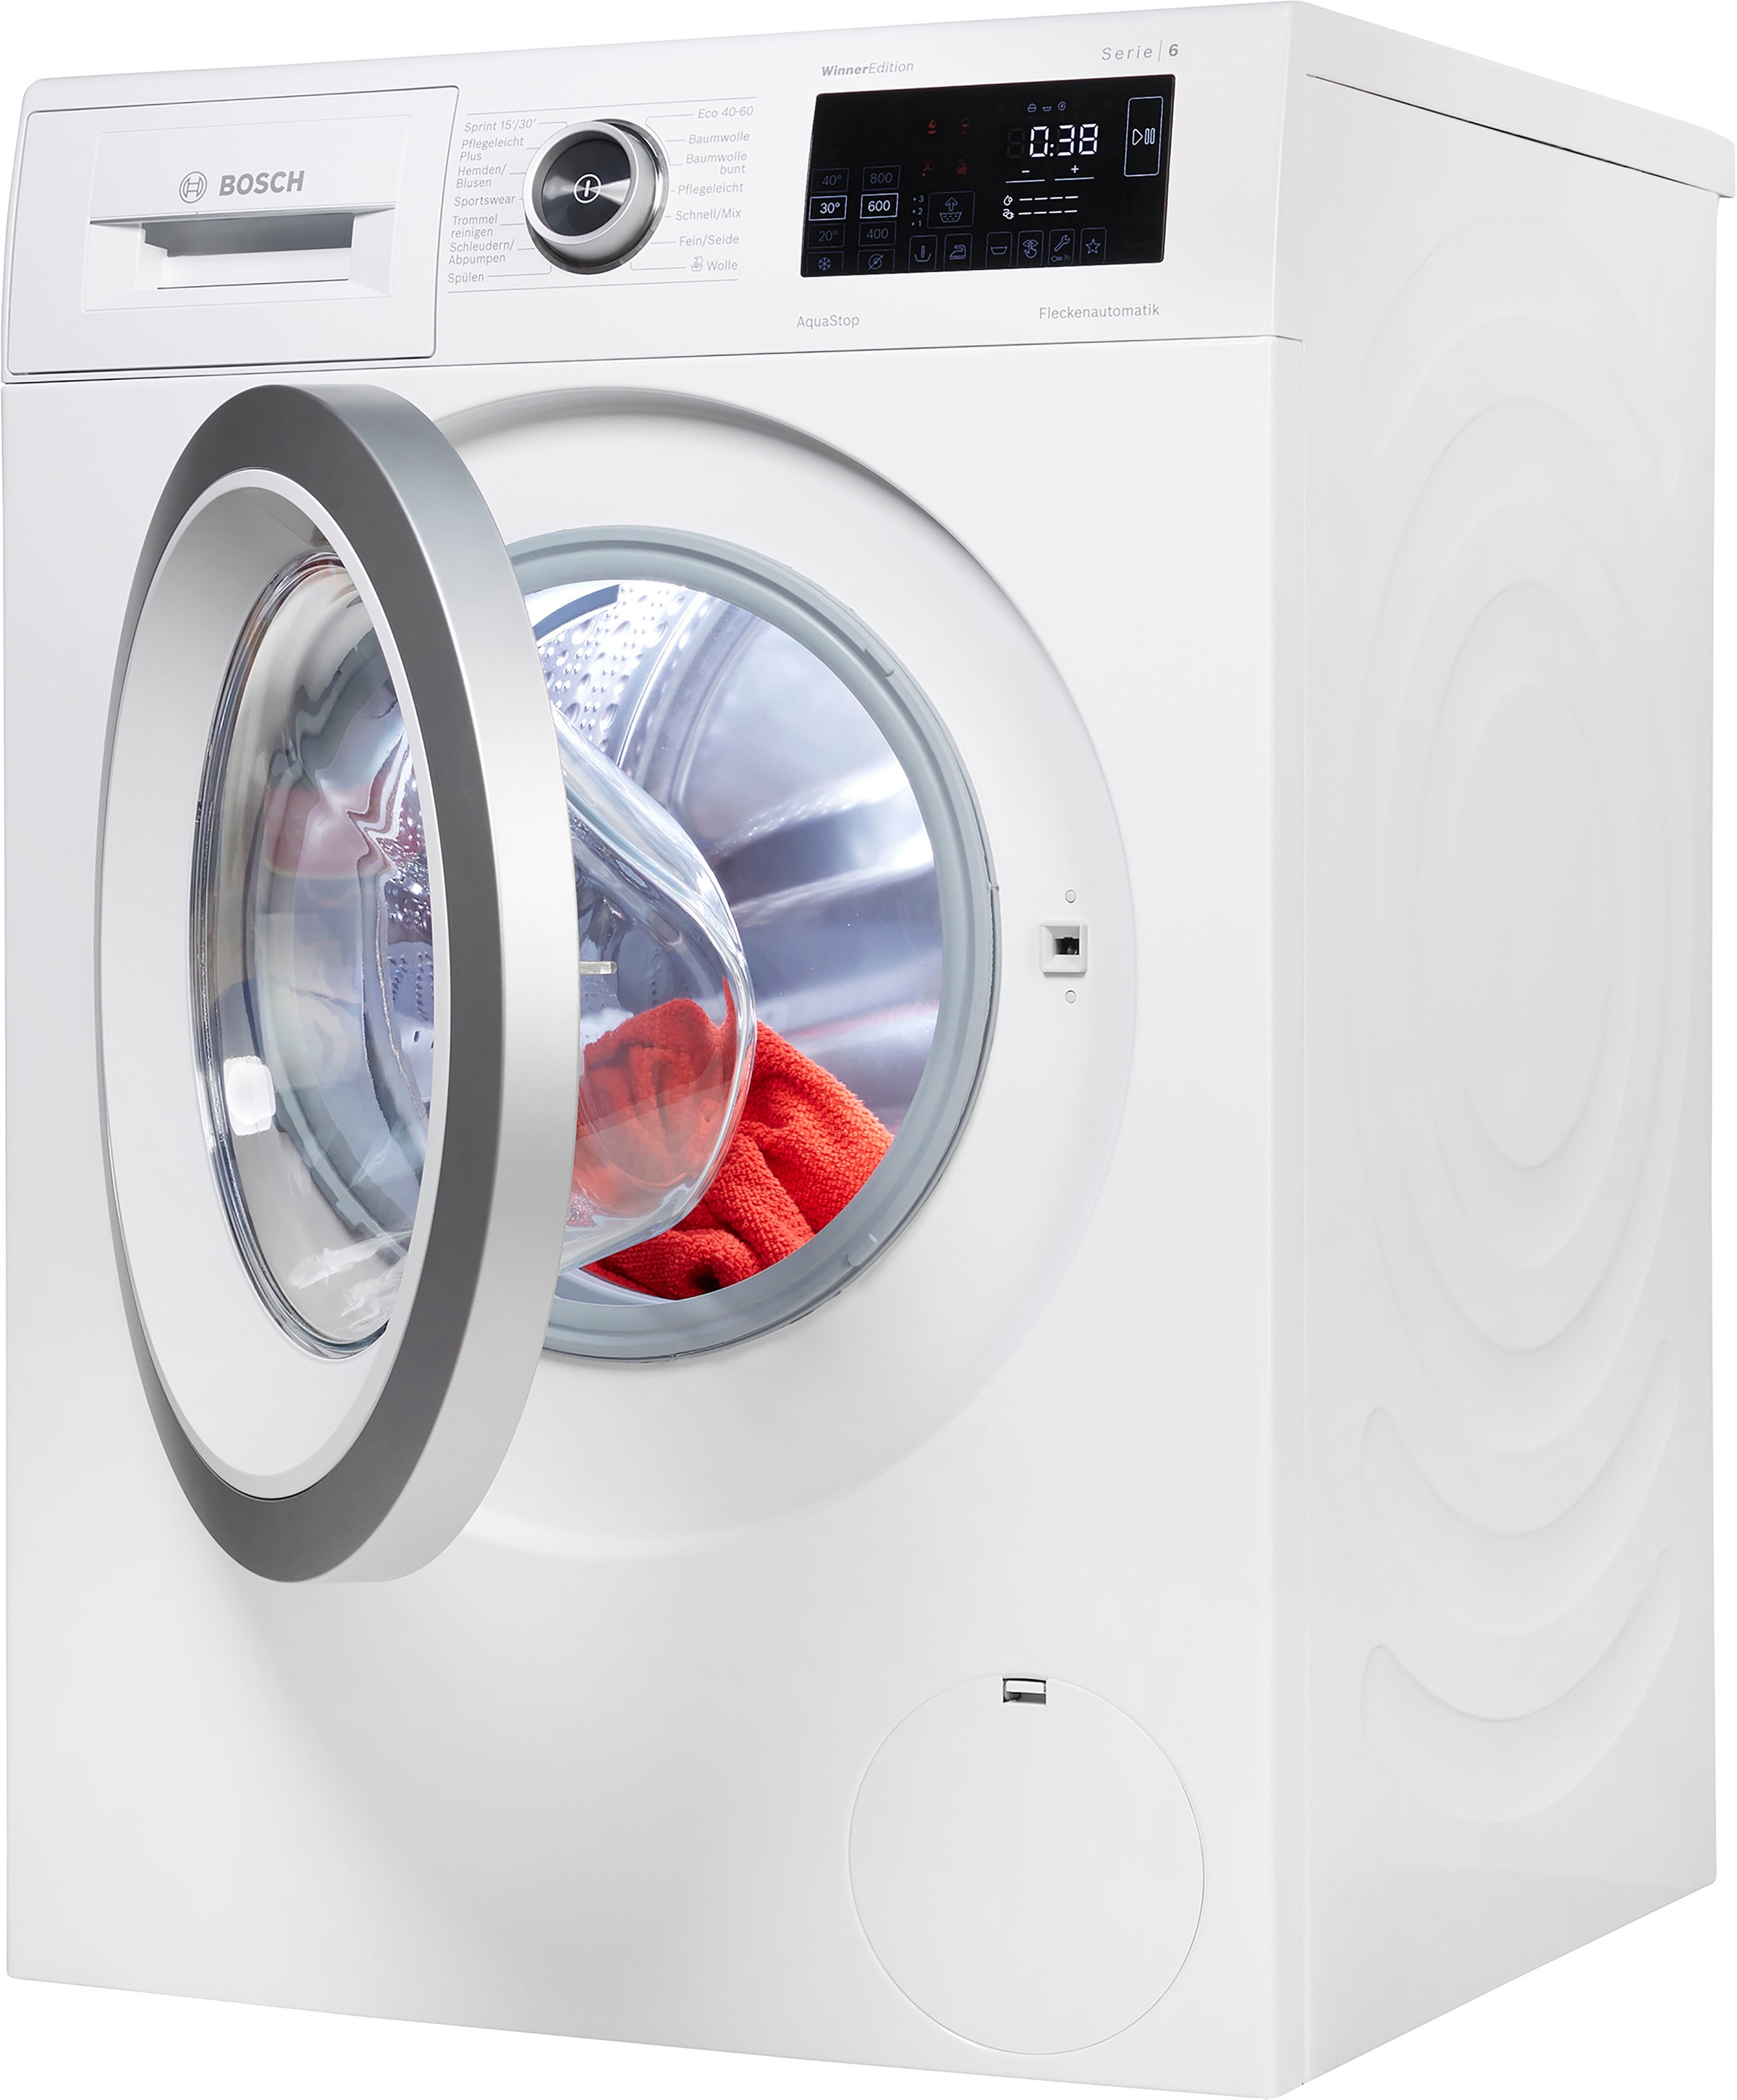 BOSCH Waschmaschine, Shop im OTTO kg, 1400 U/min WAU28RWIN, 9 Online